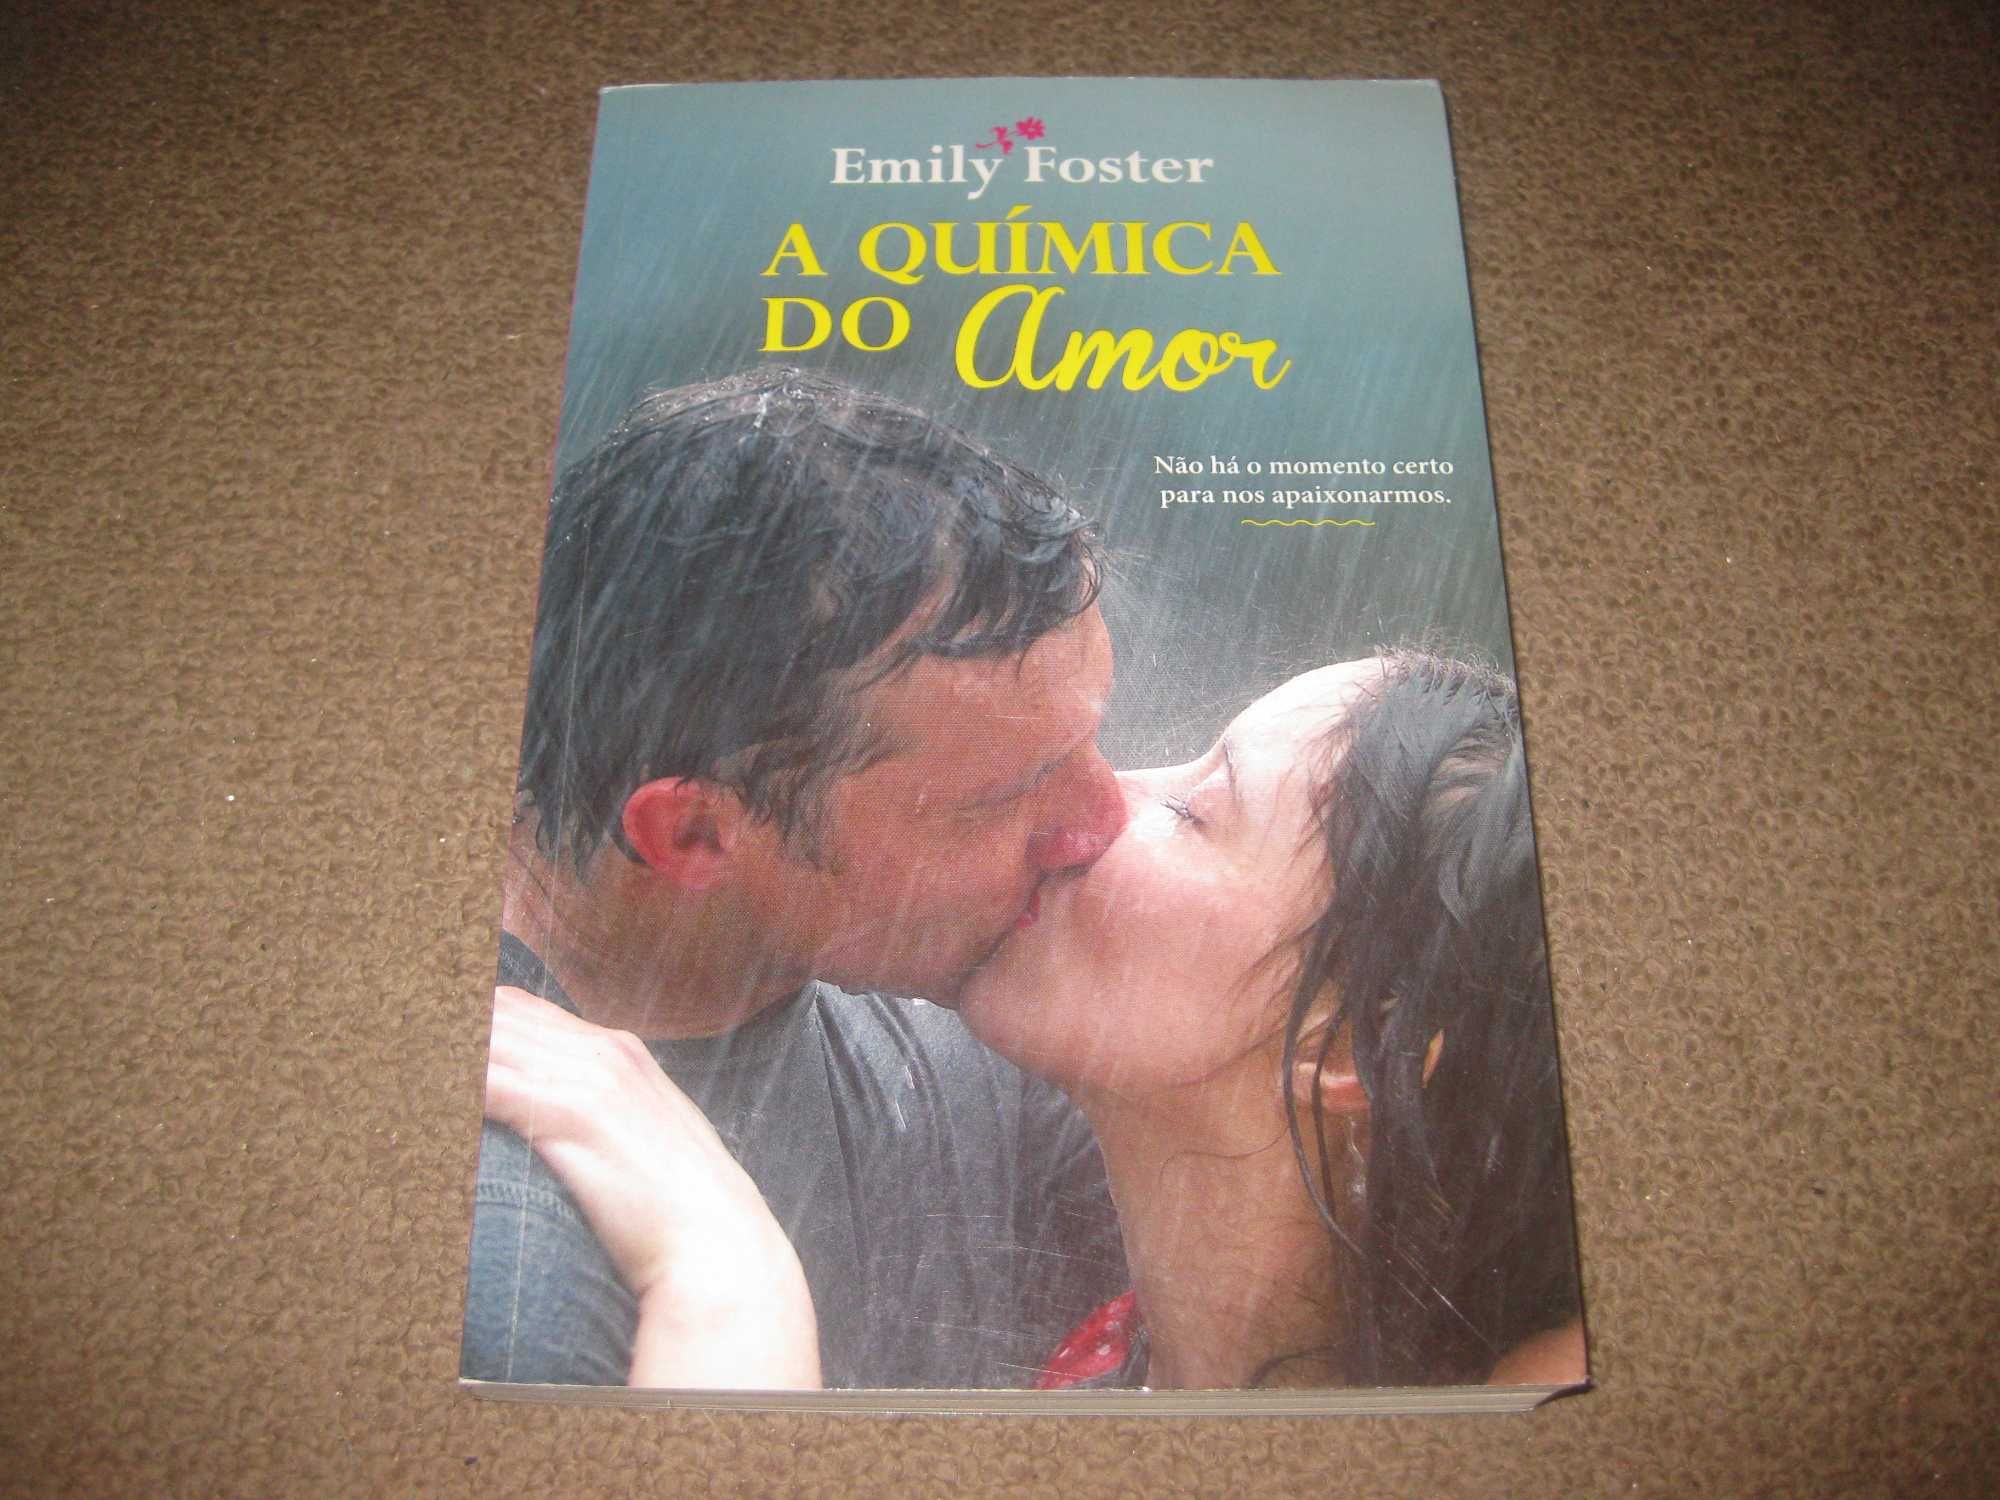 Livro "A Química do Amor" de Emily Foster